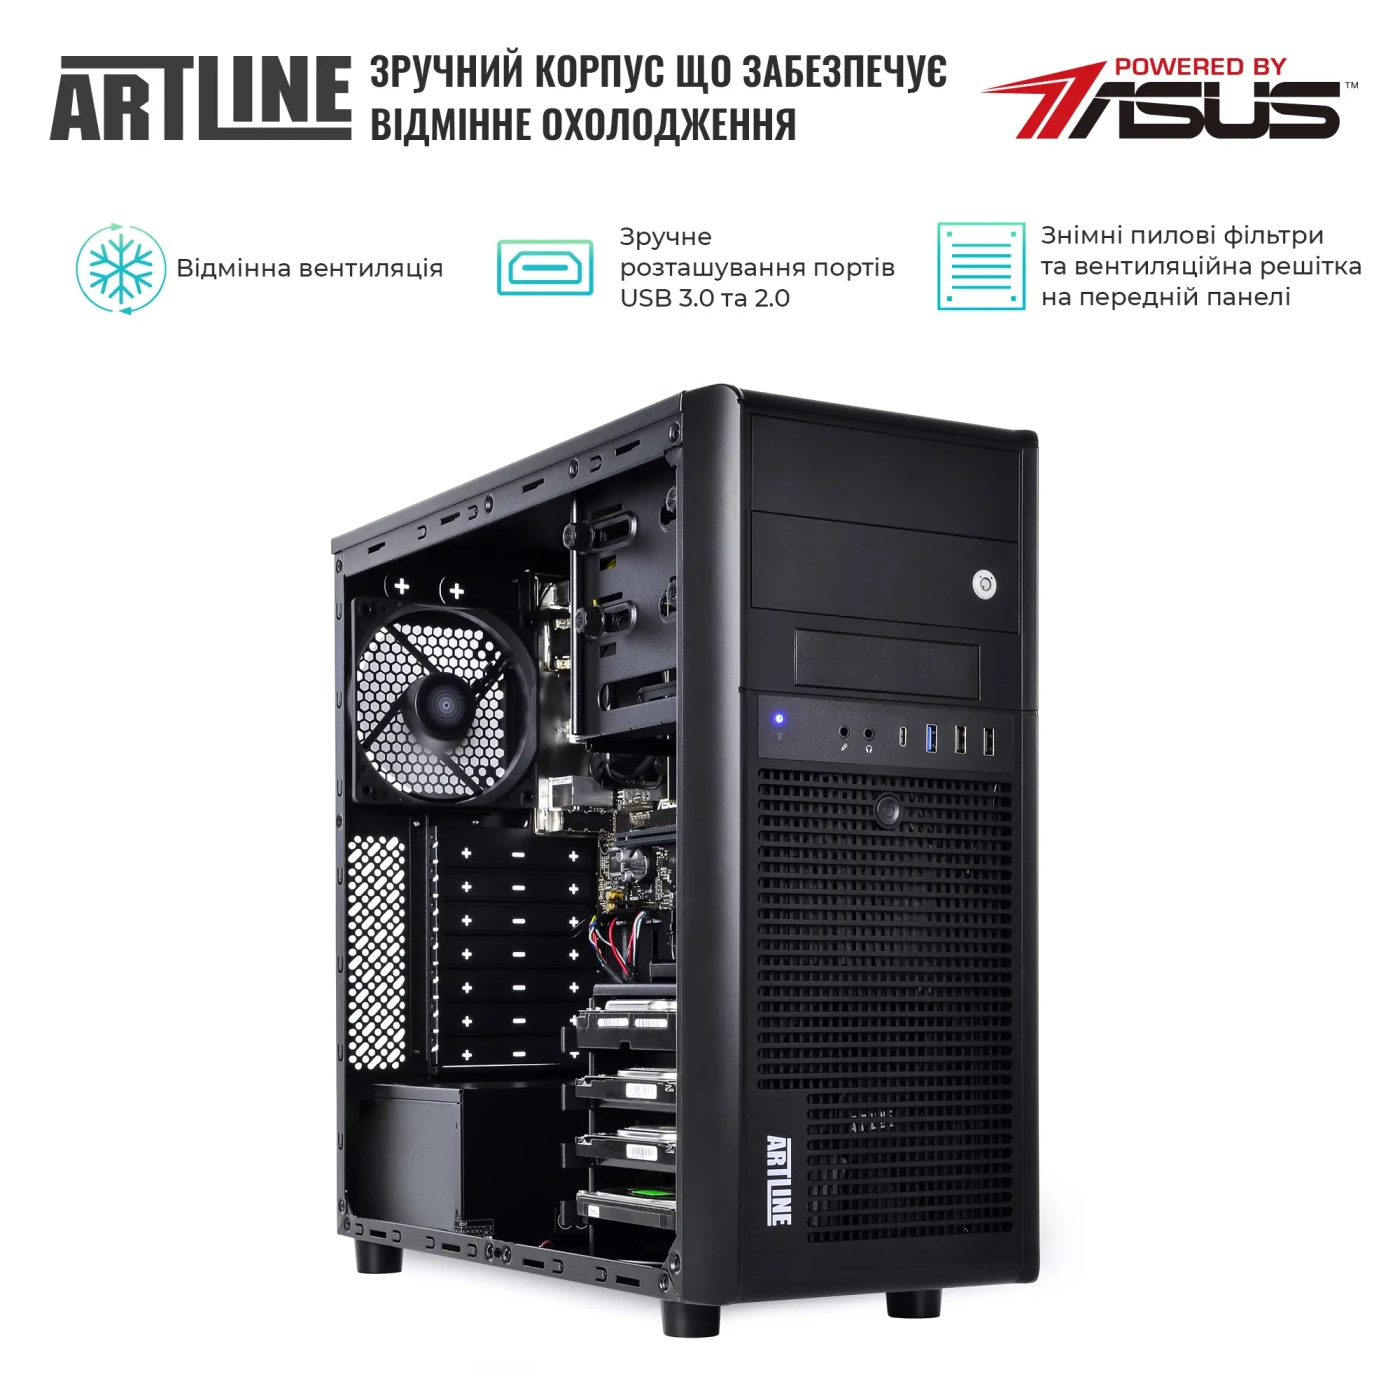 Купить Сервер ARTLINE Business T35v30 - фото 3